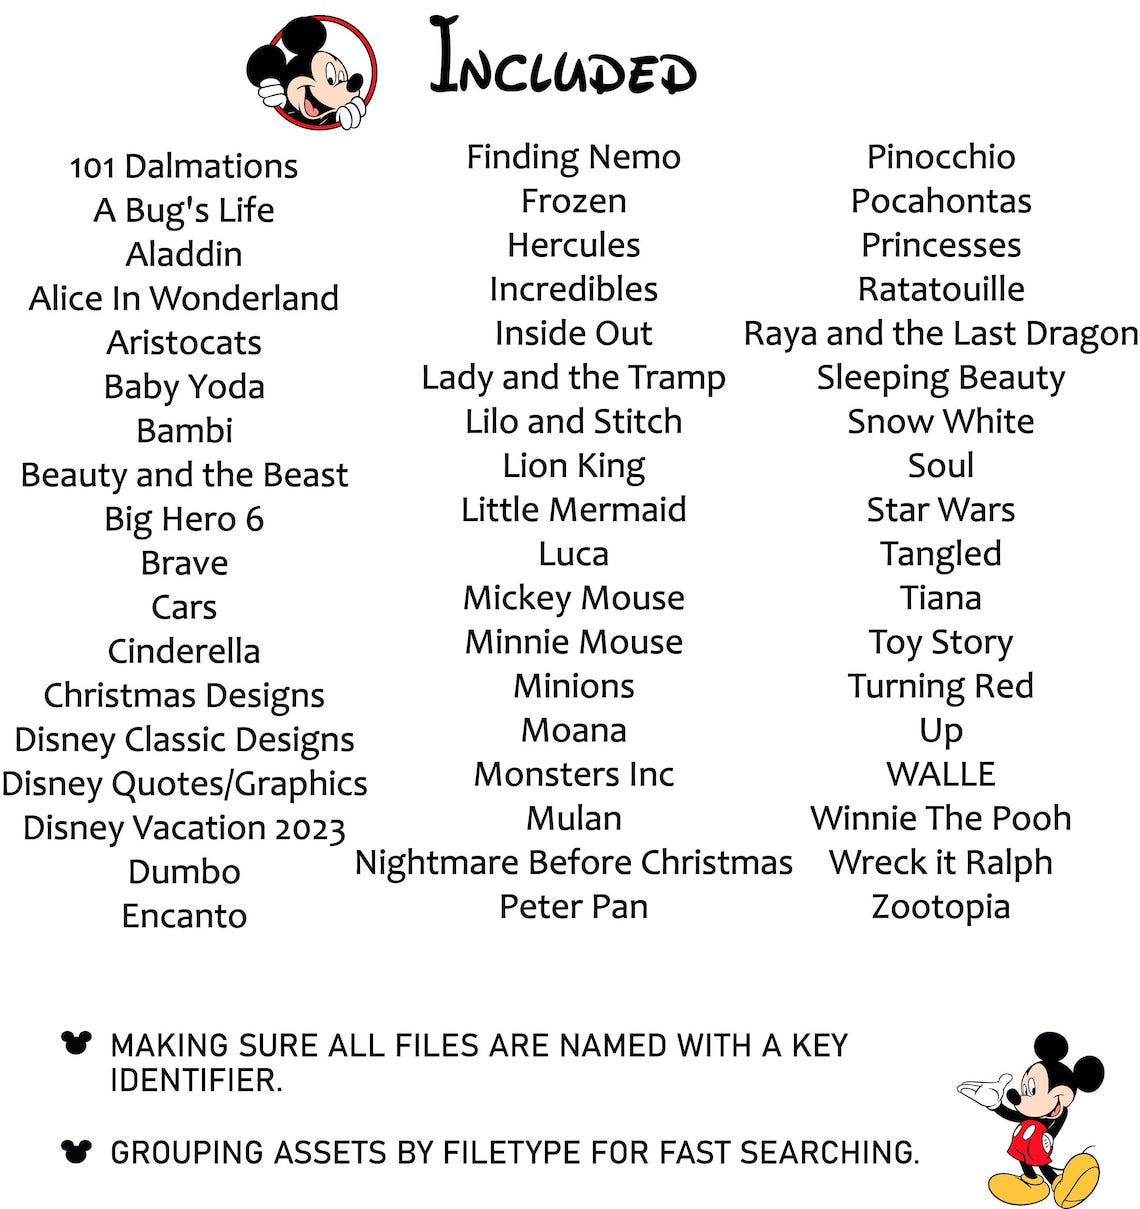 60000+ Mega Disney svg Bundle | Mickey Minnie | Moana Svg, Frozen Svg, Lion King Svg, Toy Story Clipart